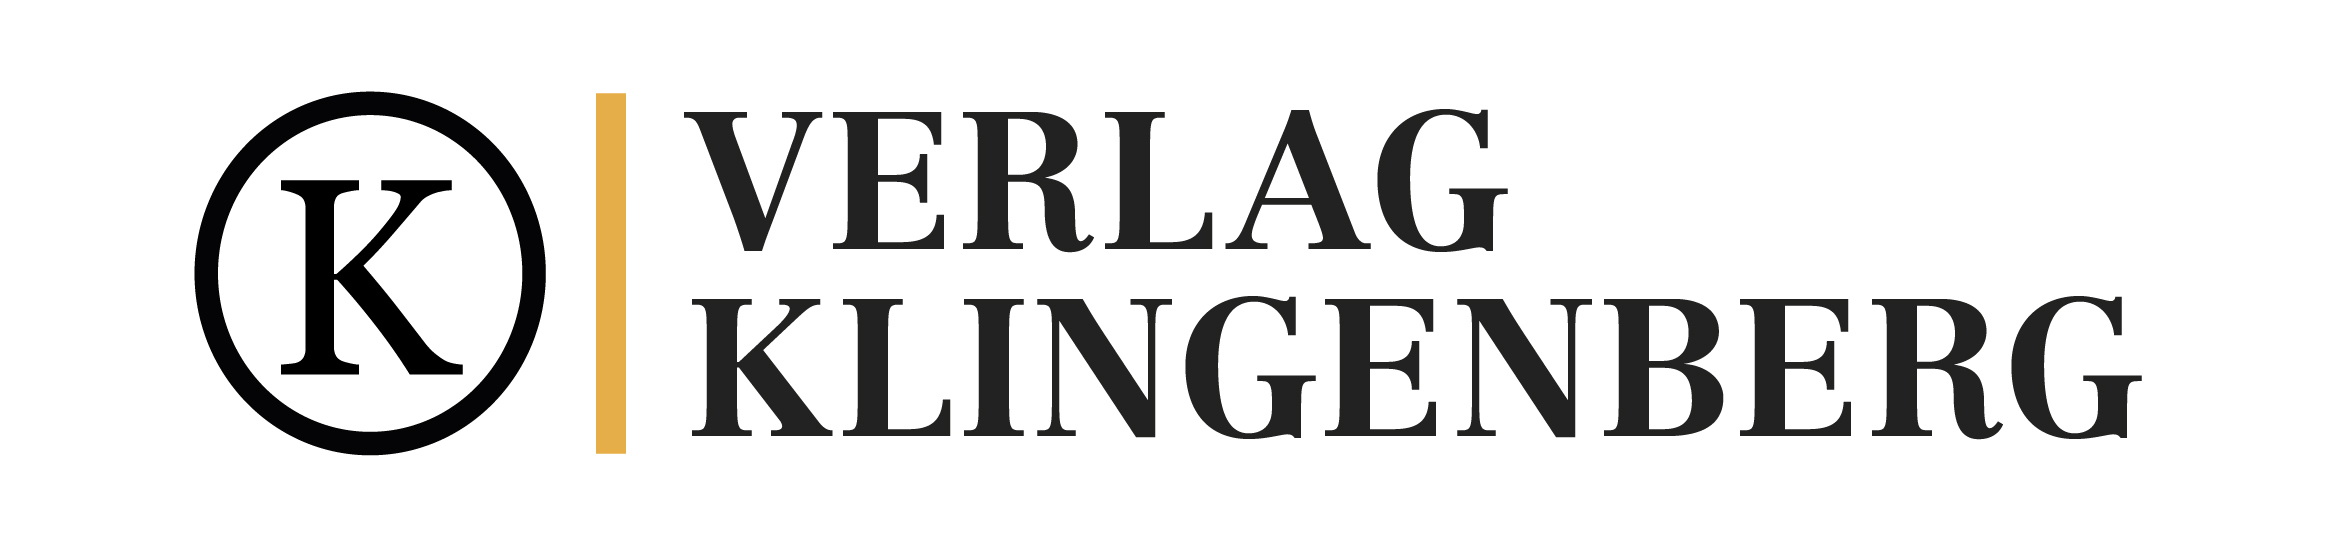 Verlag Klingenberg